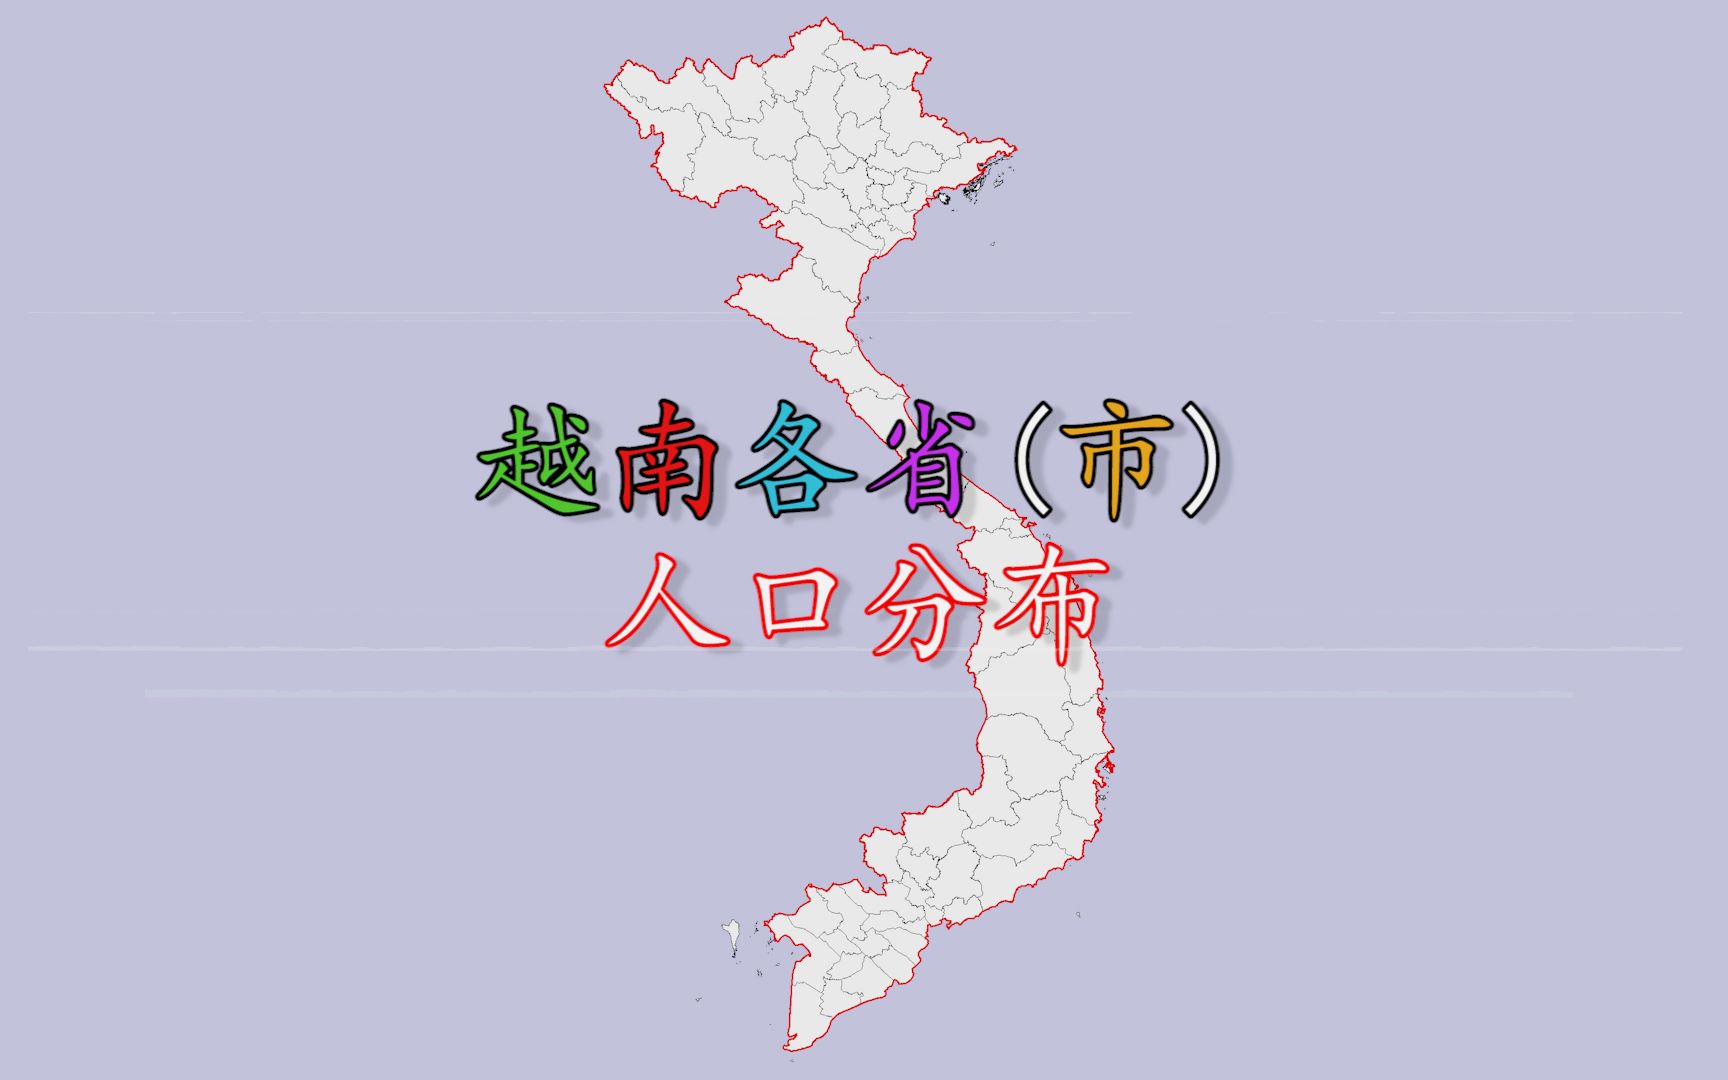 越南人口分布-图库-五毛网